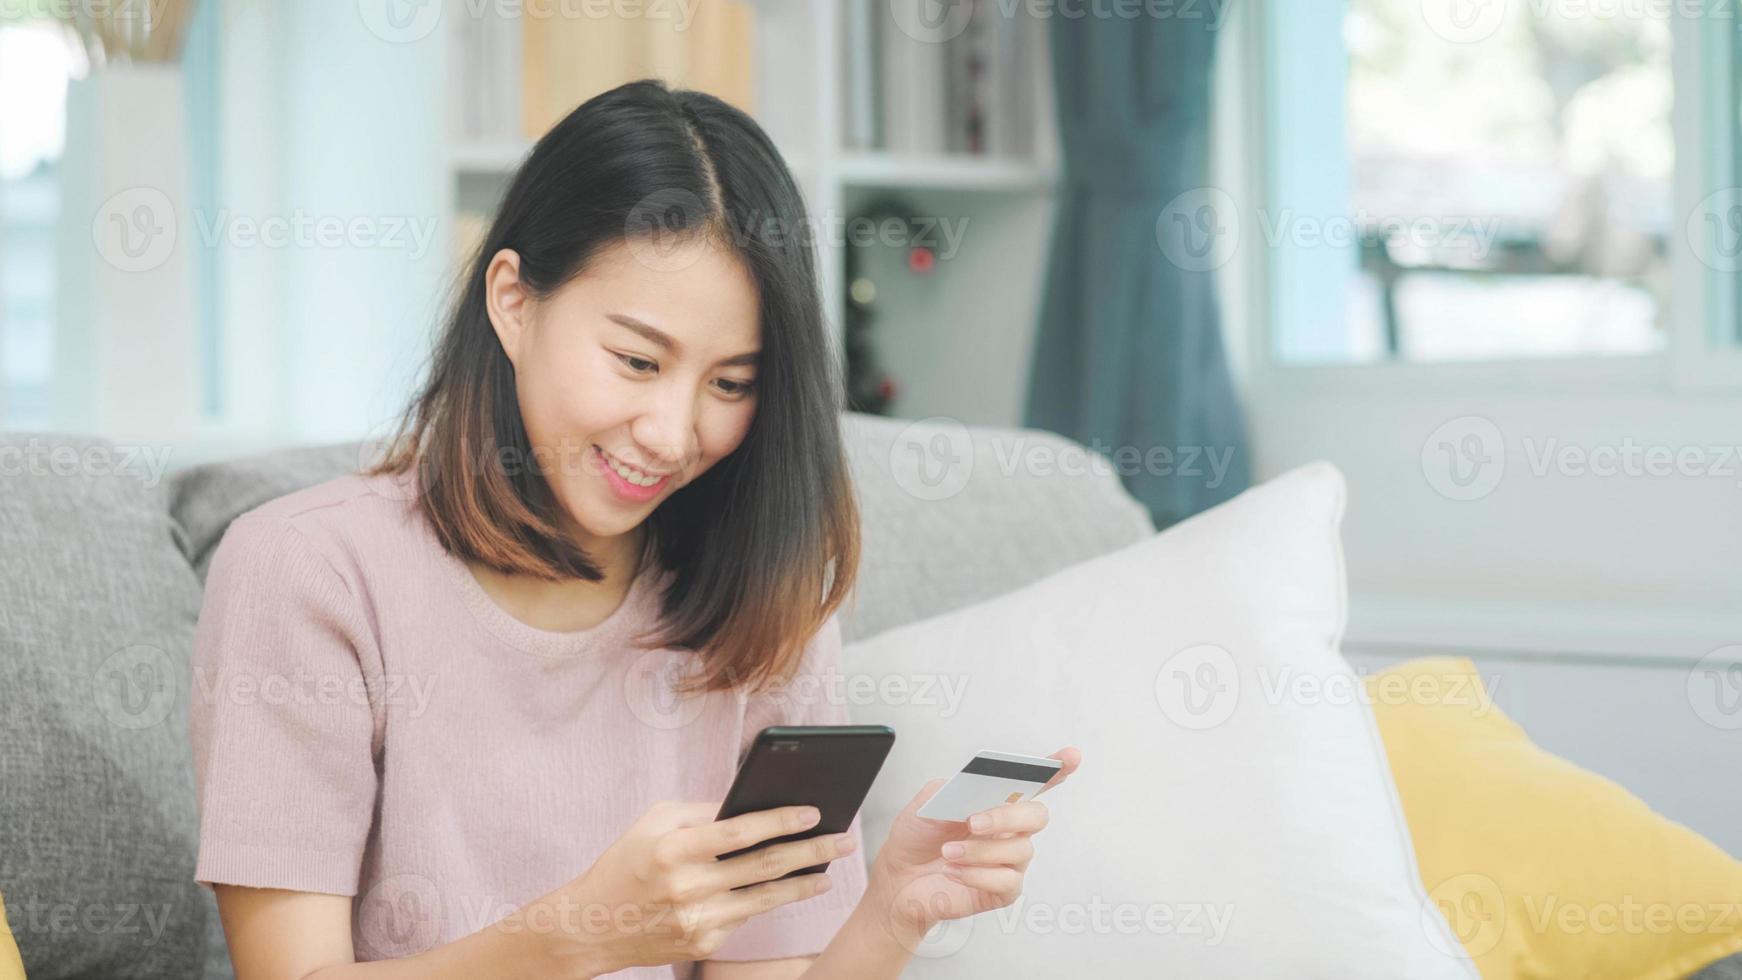 Joven mujer asiática sonriente con smartphone comprando compras en línea con tarjeta de crédito mientras está acostado en el sofá cuando se relaja en la sala de estar en casa. estilo de vida de las mujeres de etnia latina e hispana en el concepto de casa. foto